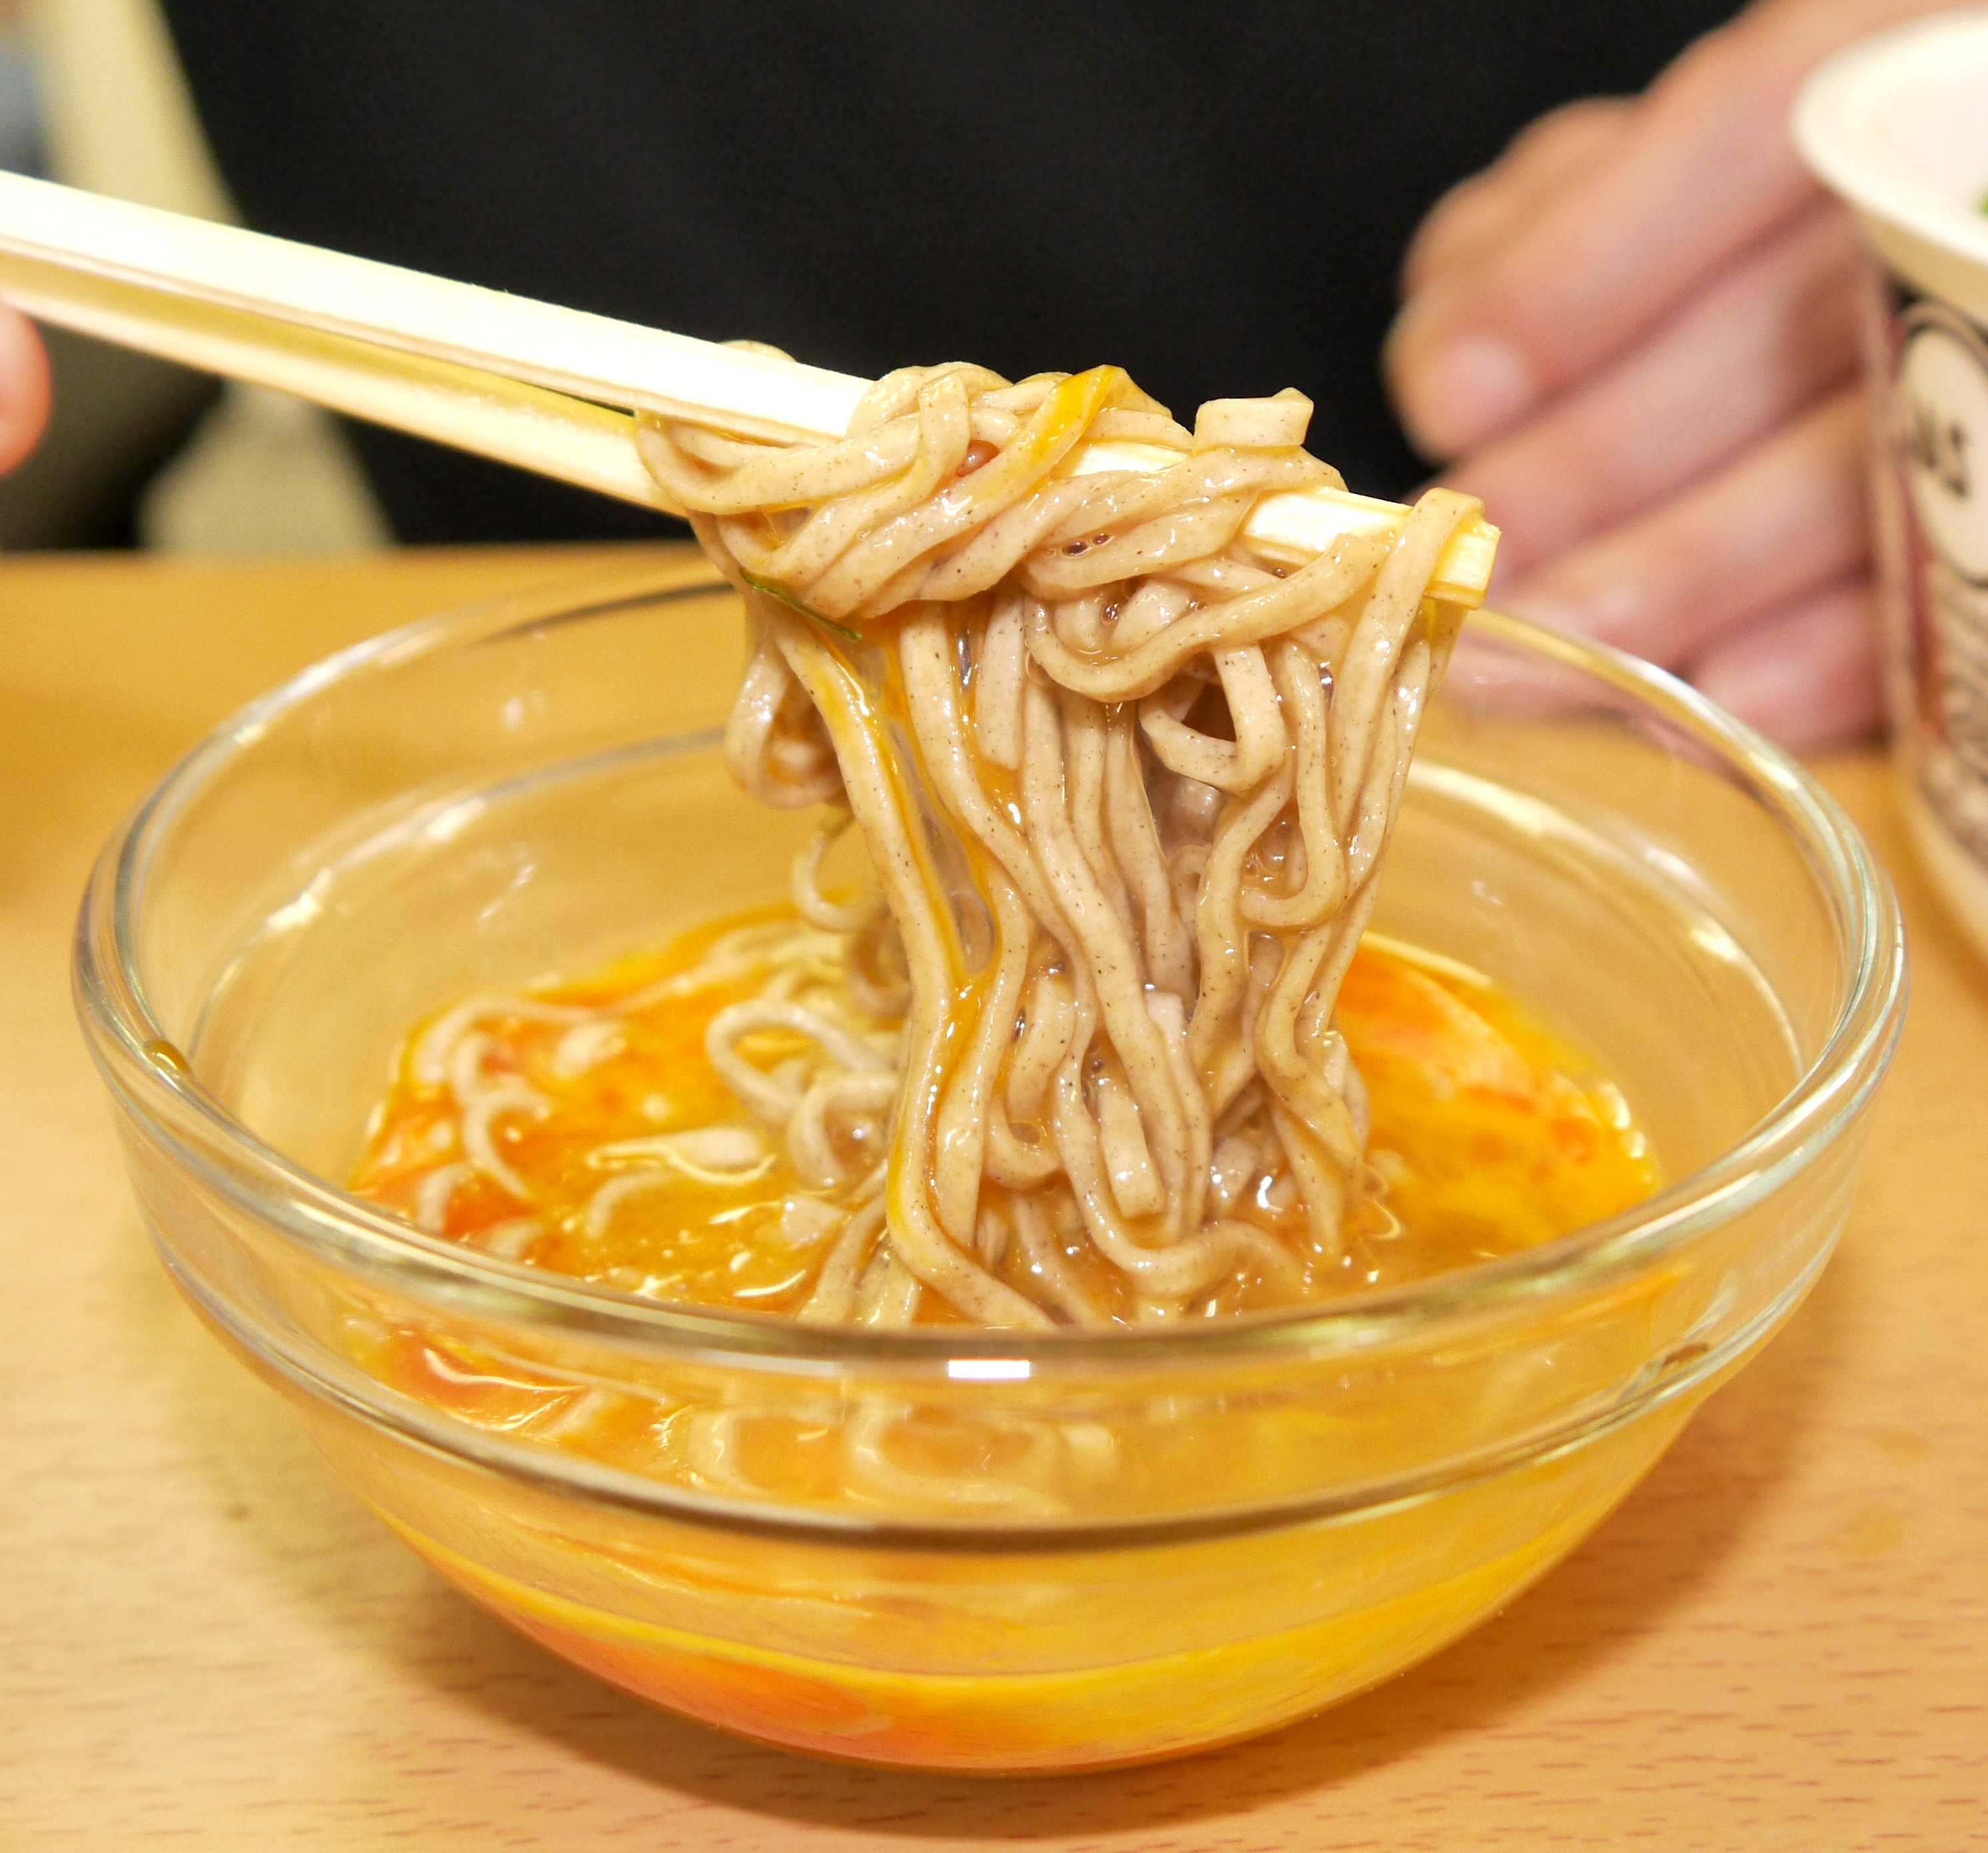 禁断アレンジレシピ カップ麺を 日本一高い卵 につけて食べると激ウマ 貴族の食べ物に大変身ッ ロケットニュース24